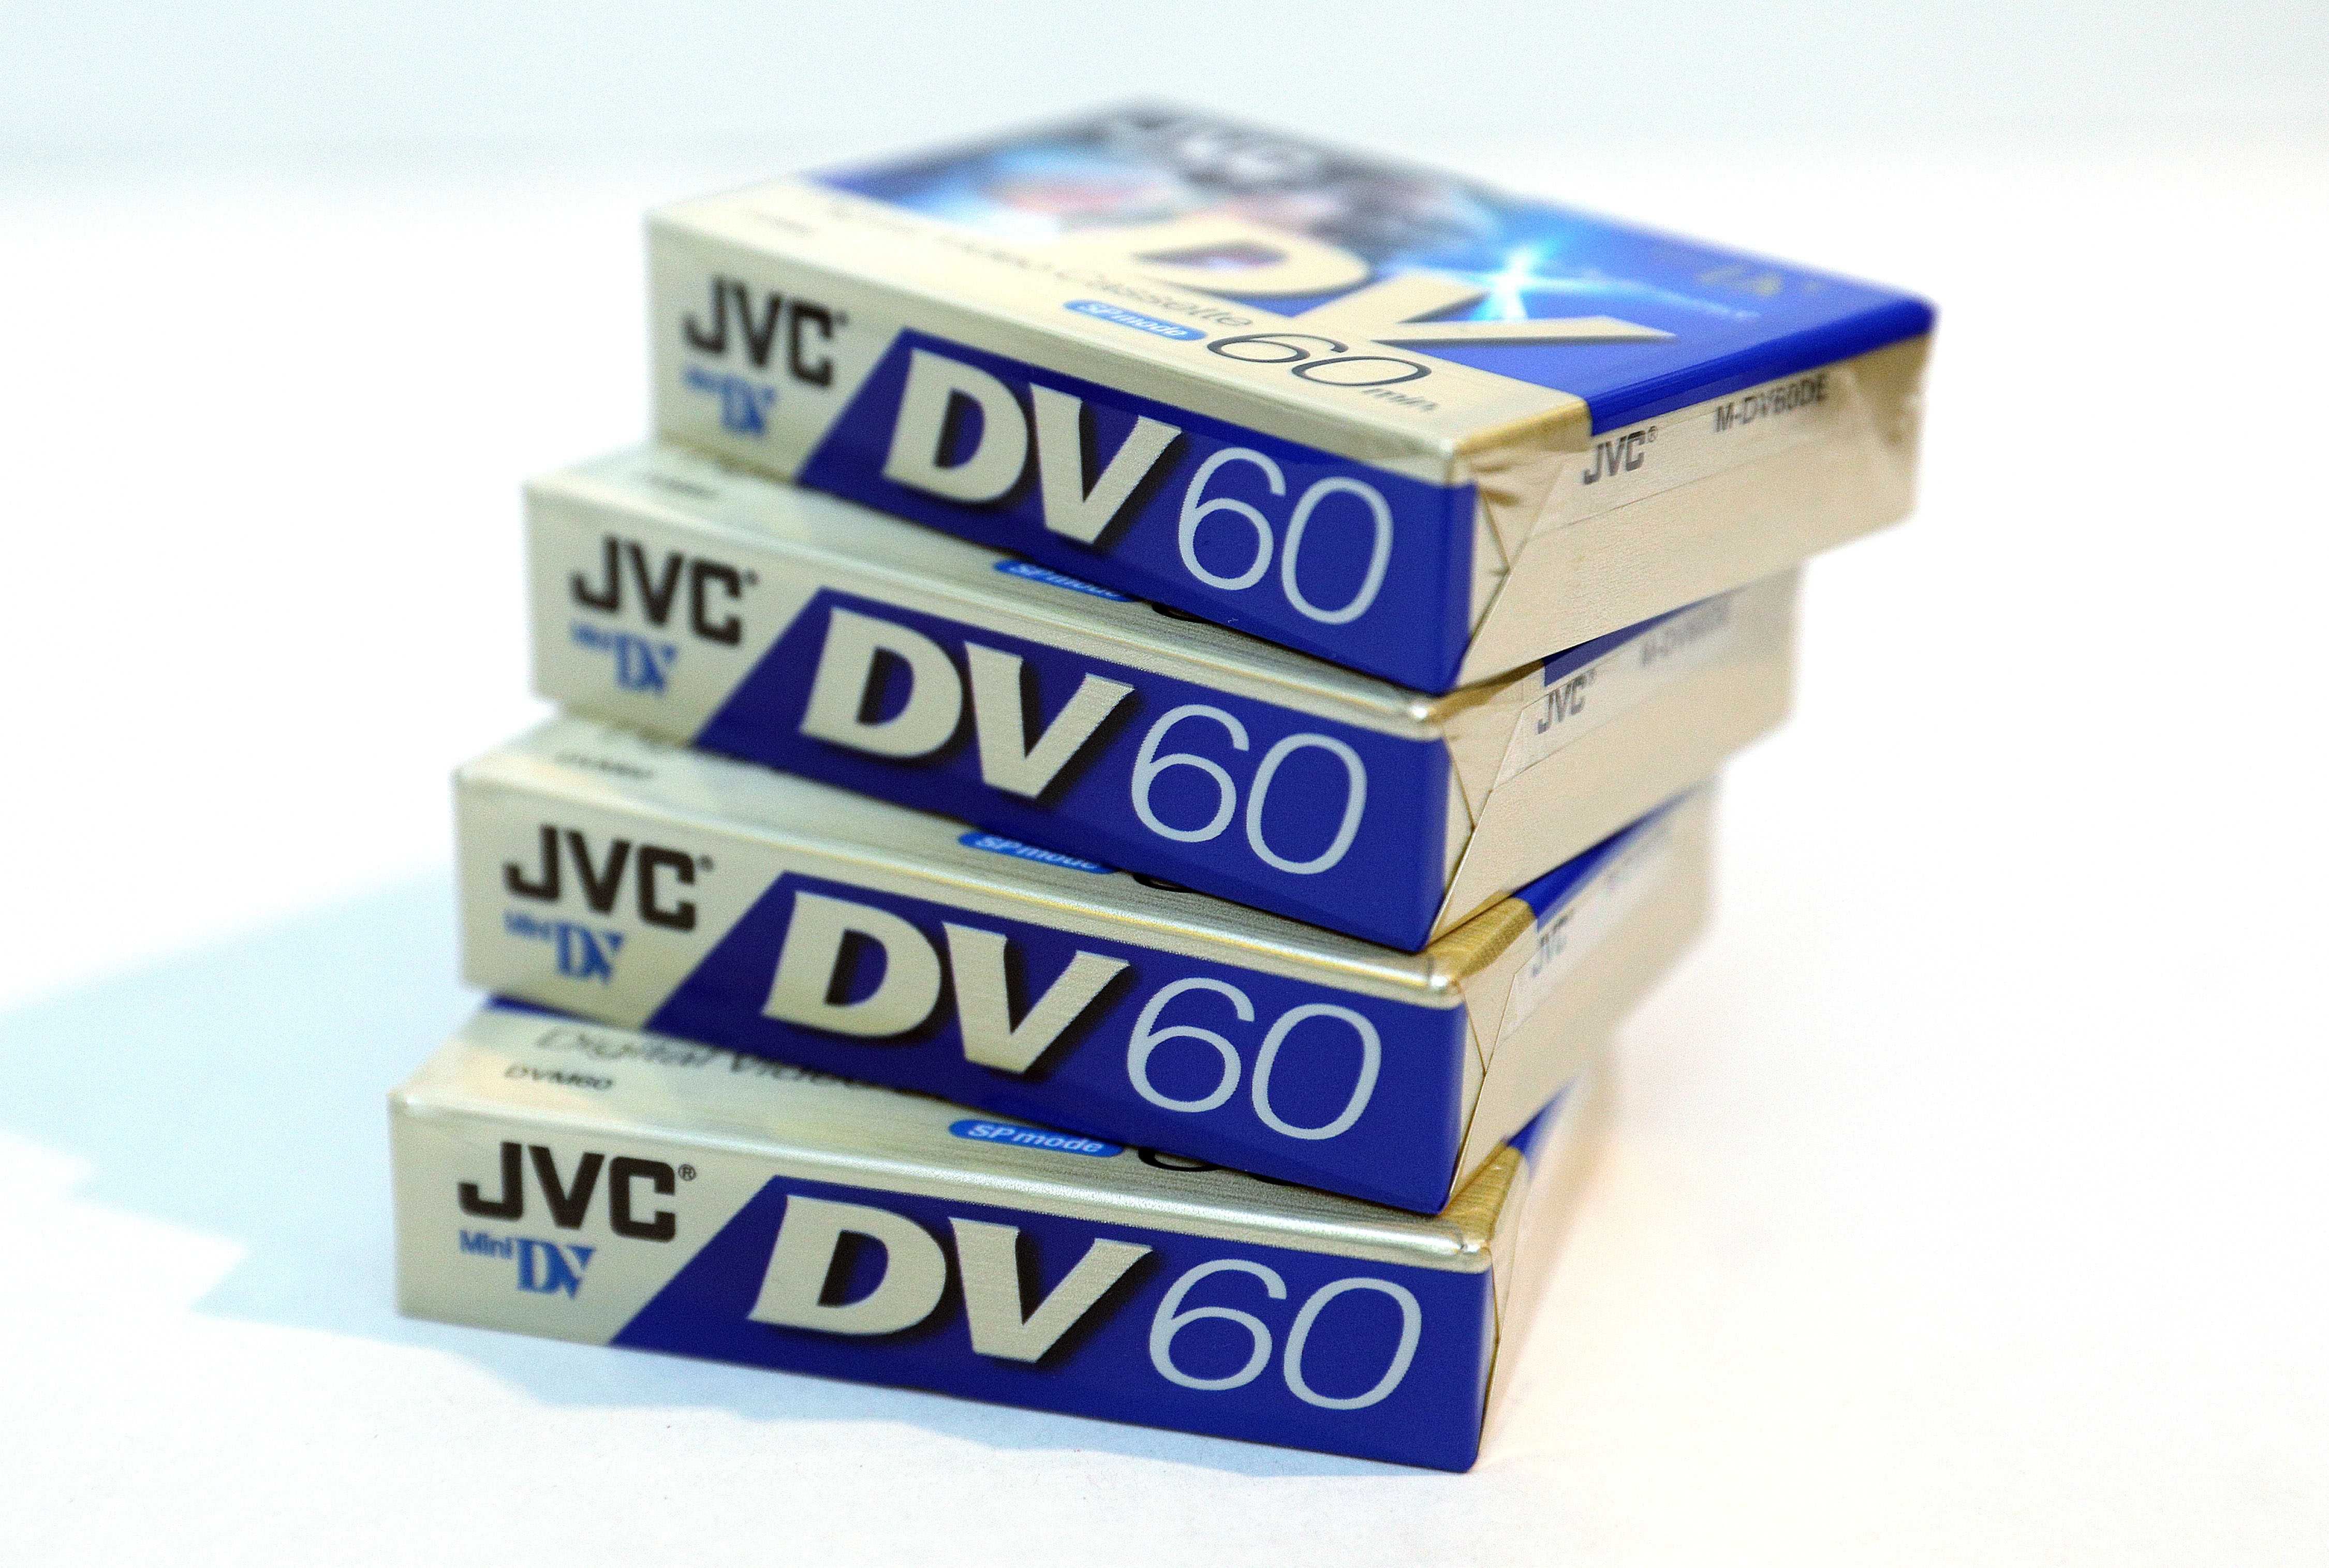 2x JVC DVM 60 ME kaseta mini DV *Jakość JAPAN* Tanio tylko 23,- 1 szt.